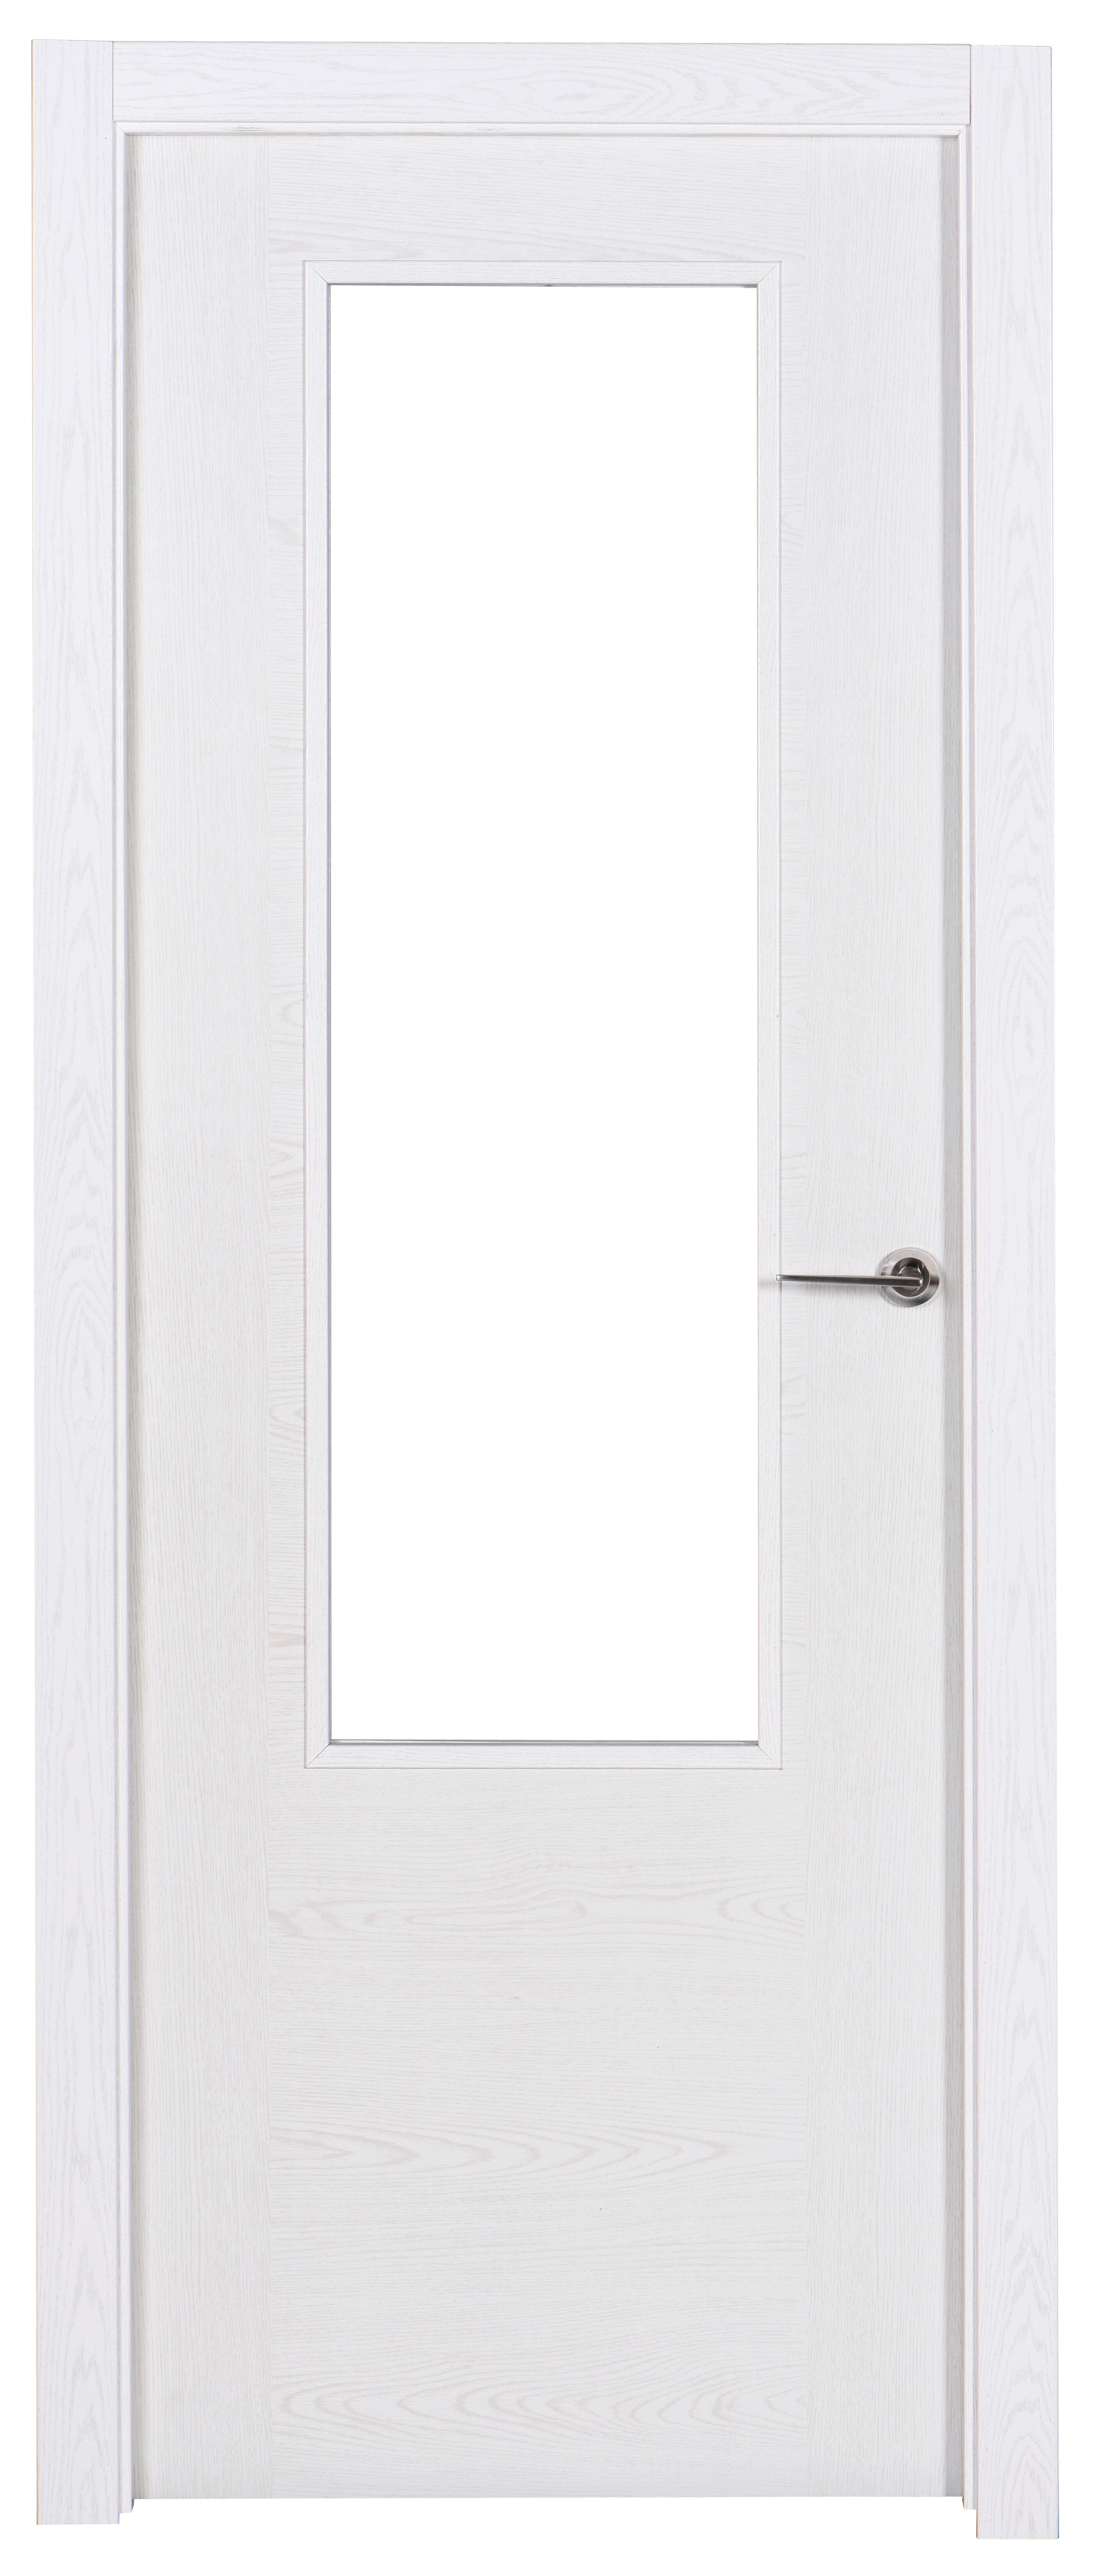 Puerta canarias blanco apertura izquierda con cristal 72.5cm